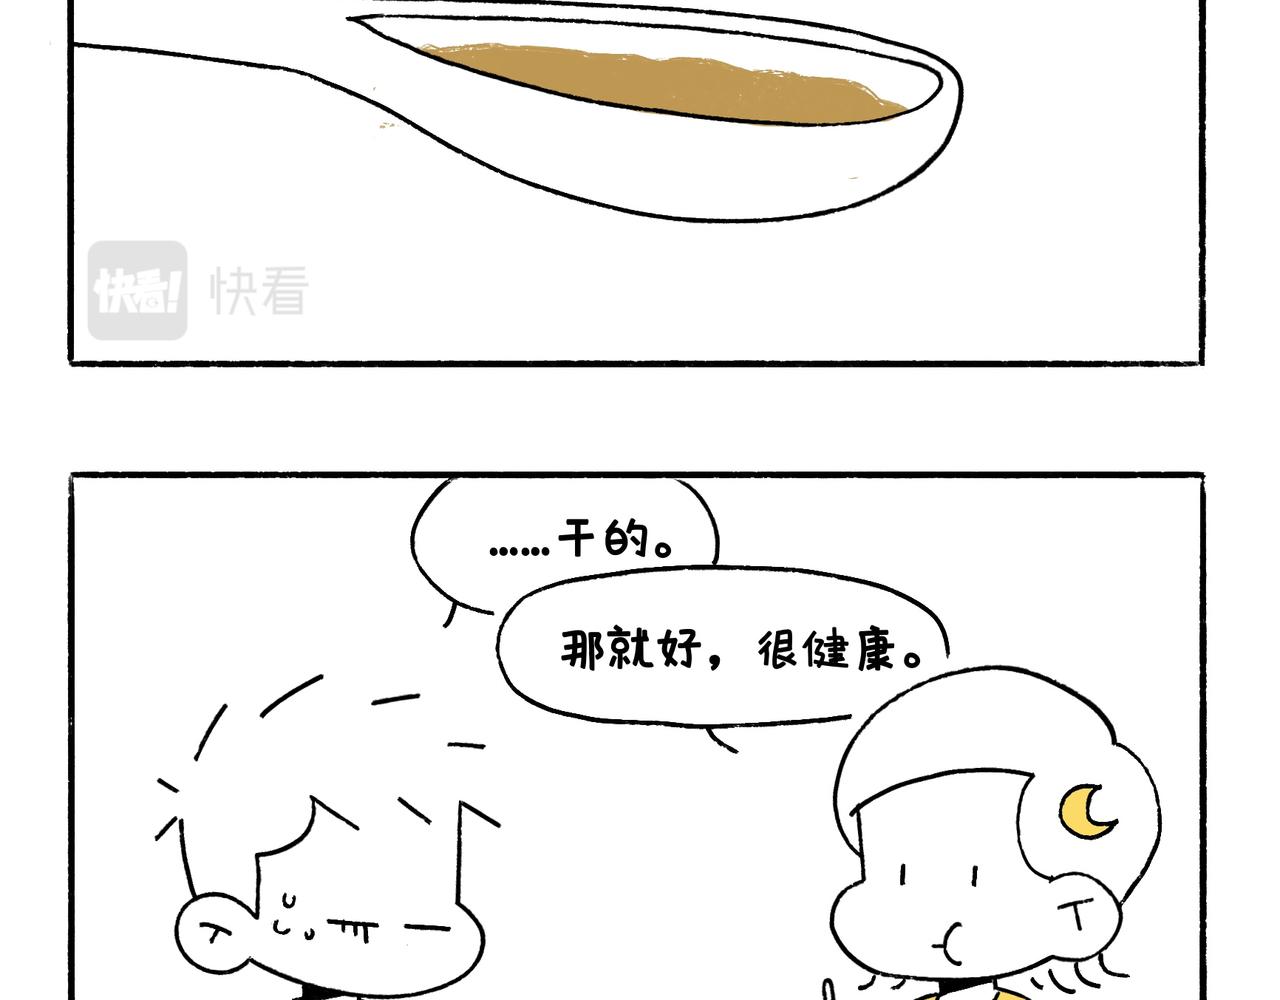 地呱炒土豆 - 出浴即巔峰 - 4